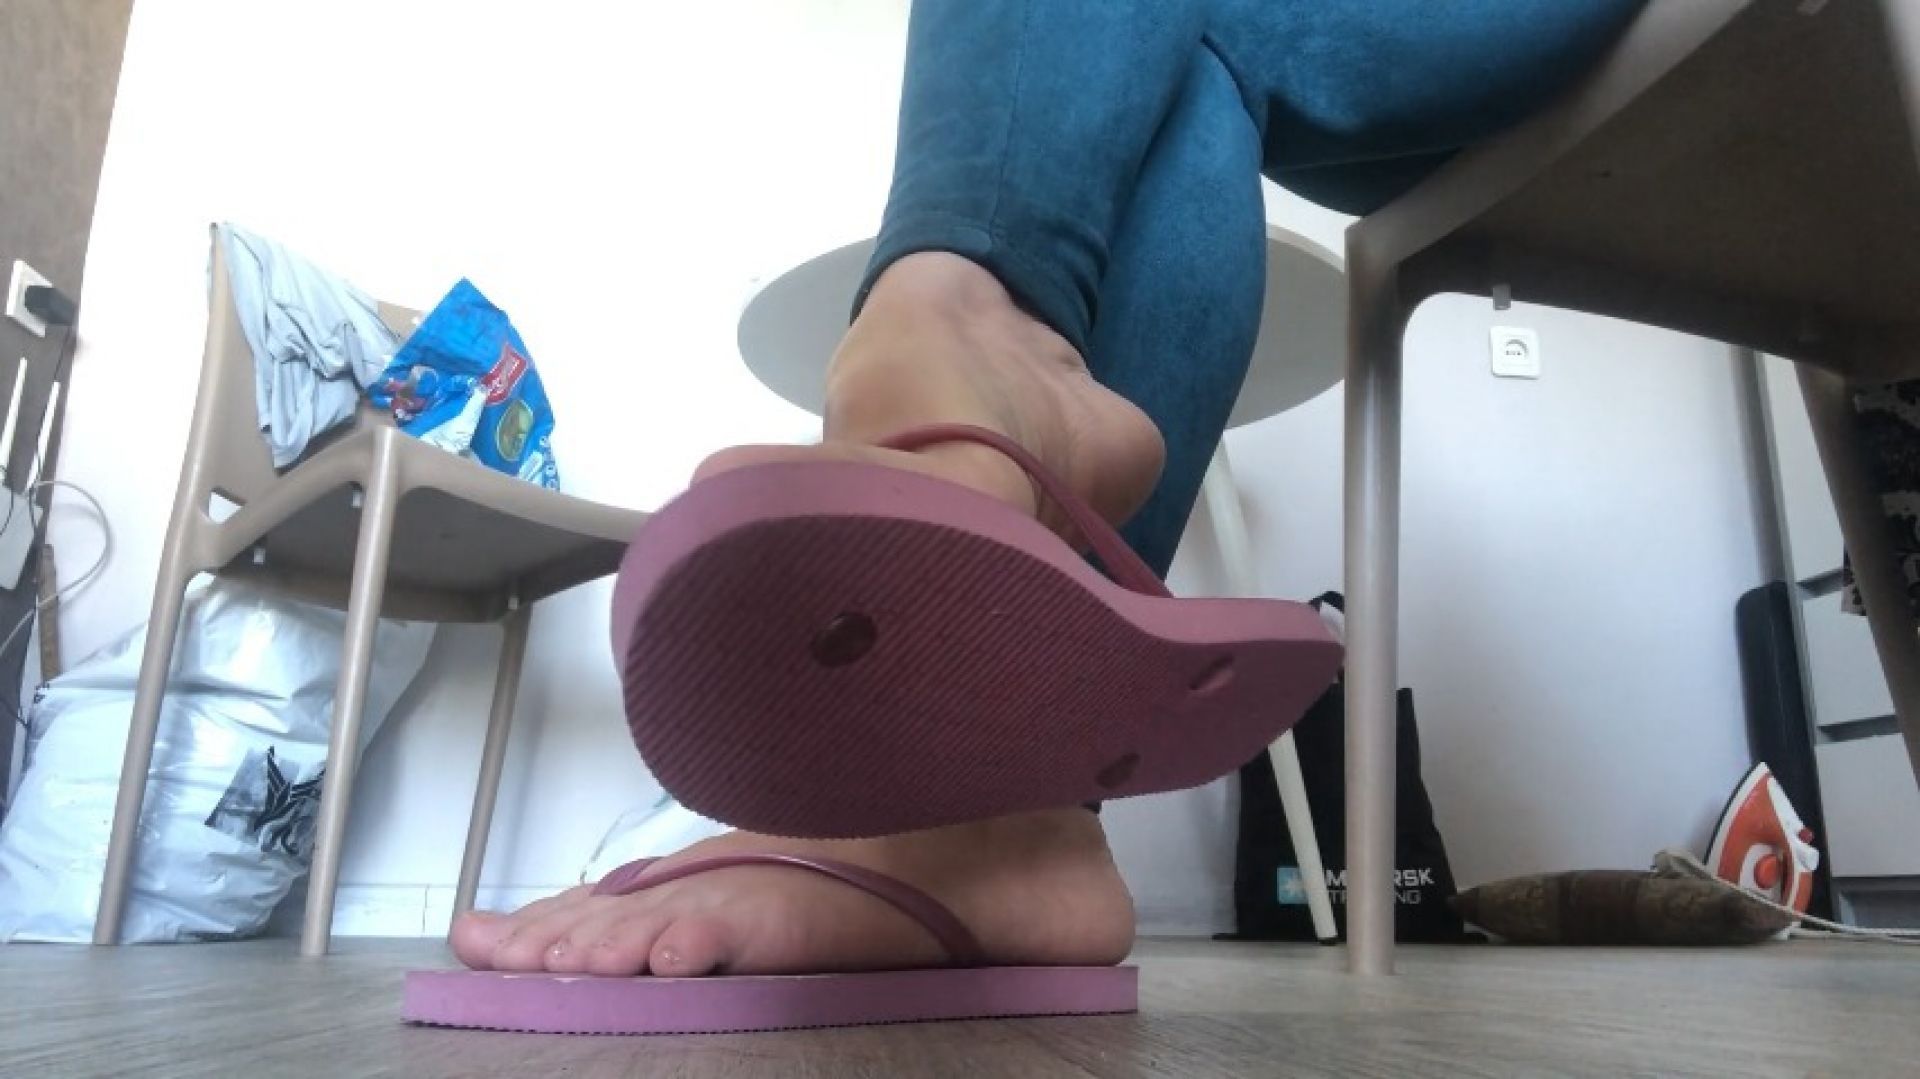 New flip flops